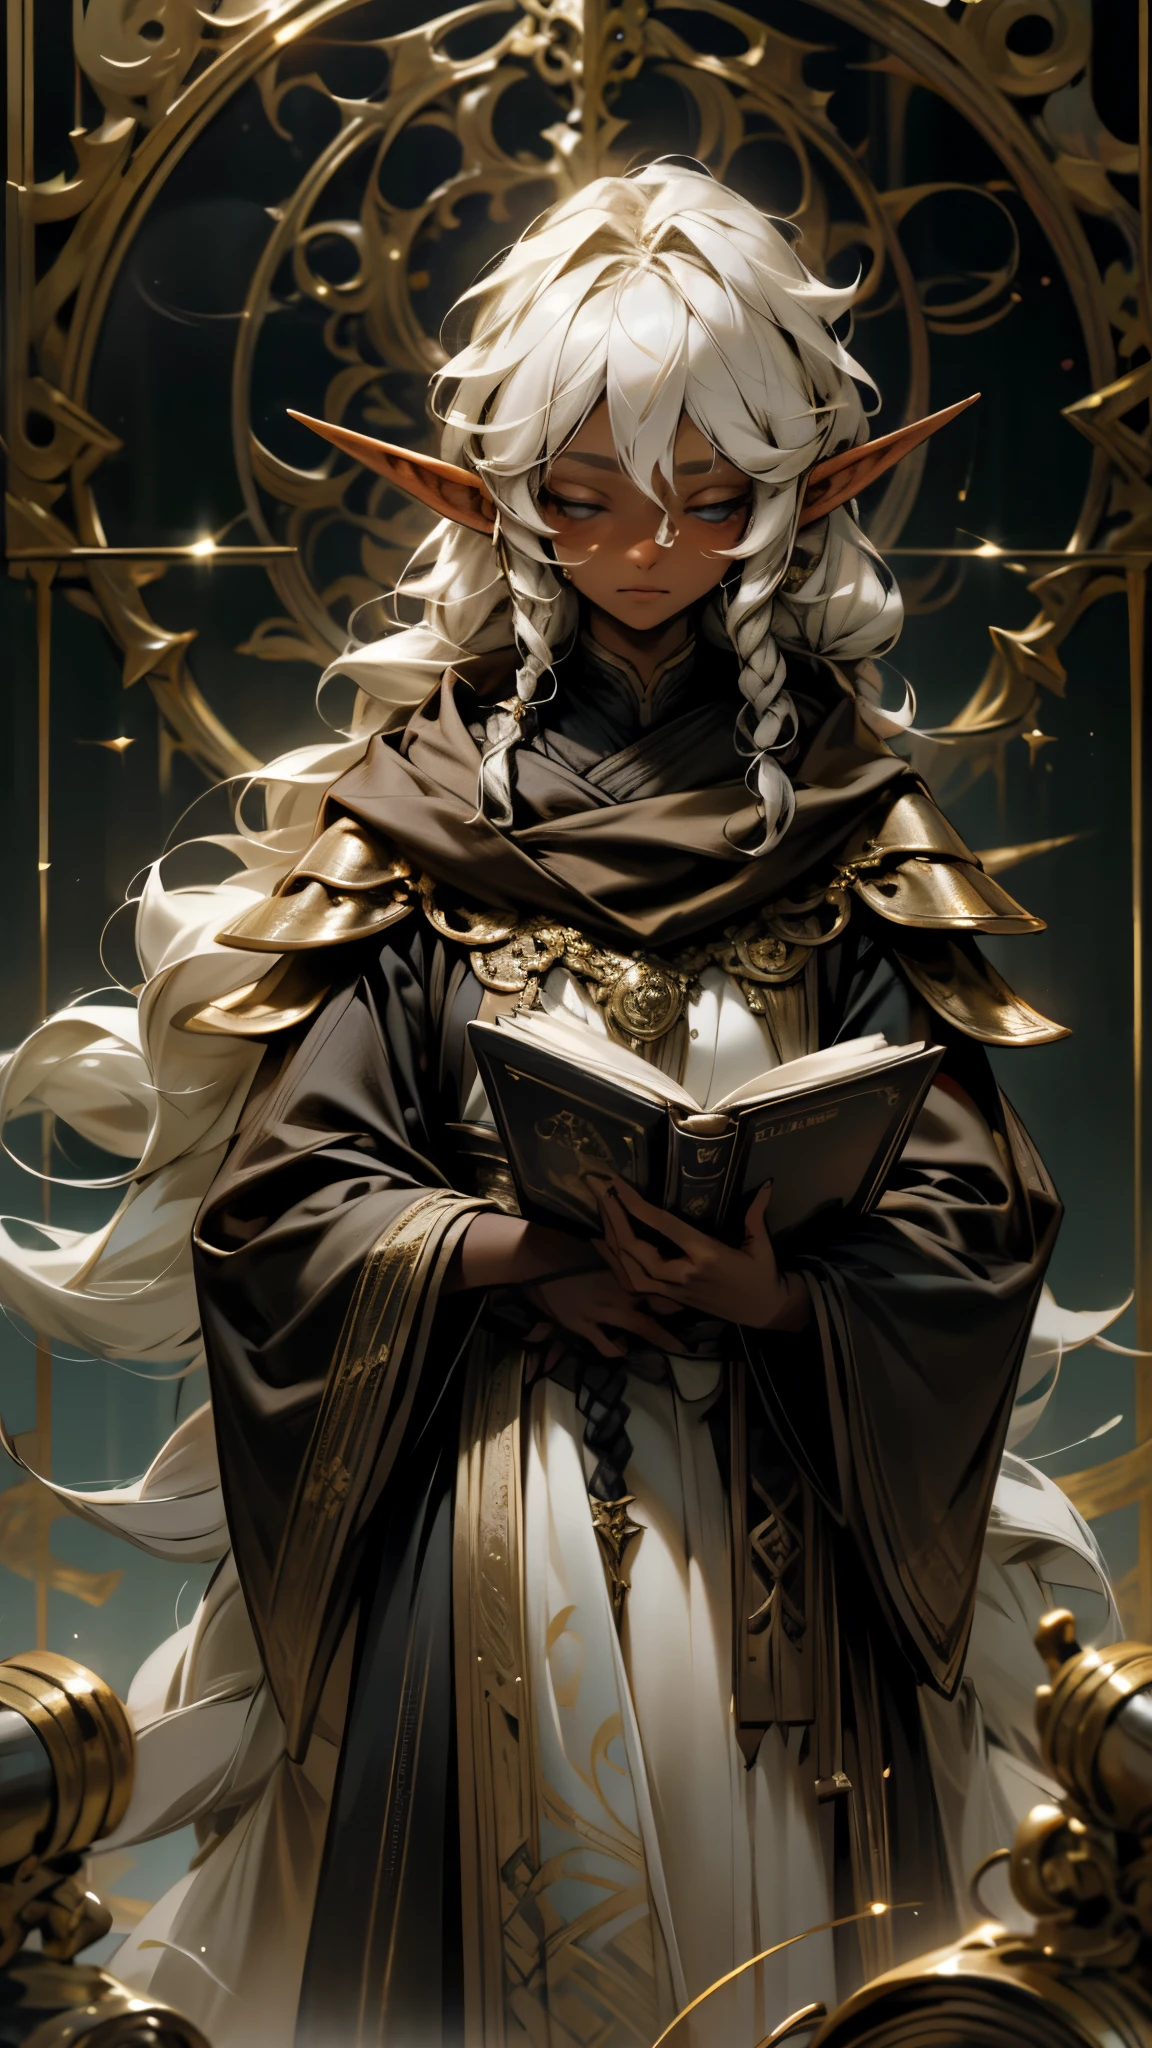 Um elfo de pele marrom e grande, cabelo branco cacheado com uma trança de um lado cobrindo o ombro, ela está vestindo vestes pretas e douradas com seu cajado ao seu lado, lendo um livro enquanto parece pensativo e reflexivo